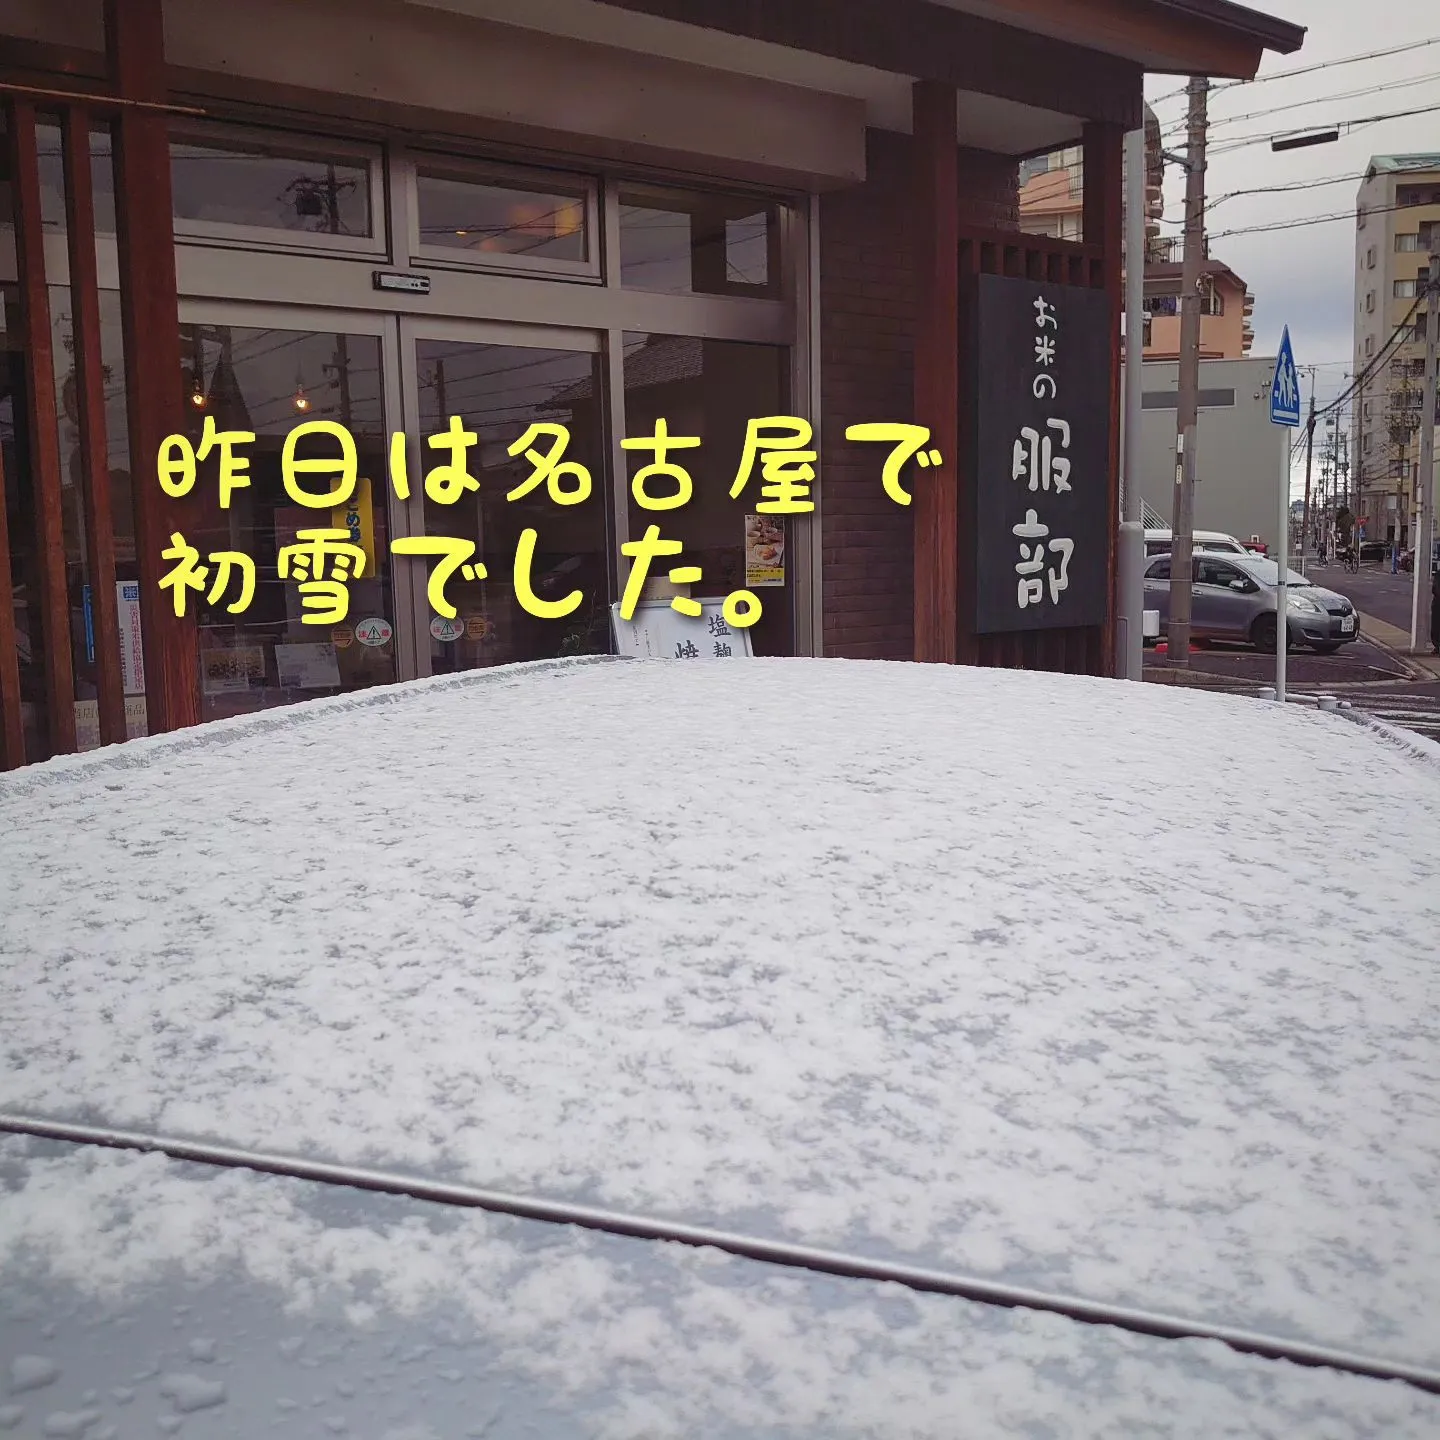 名古屋の初雪はちょっとだけでした❄️